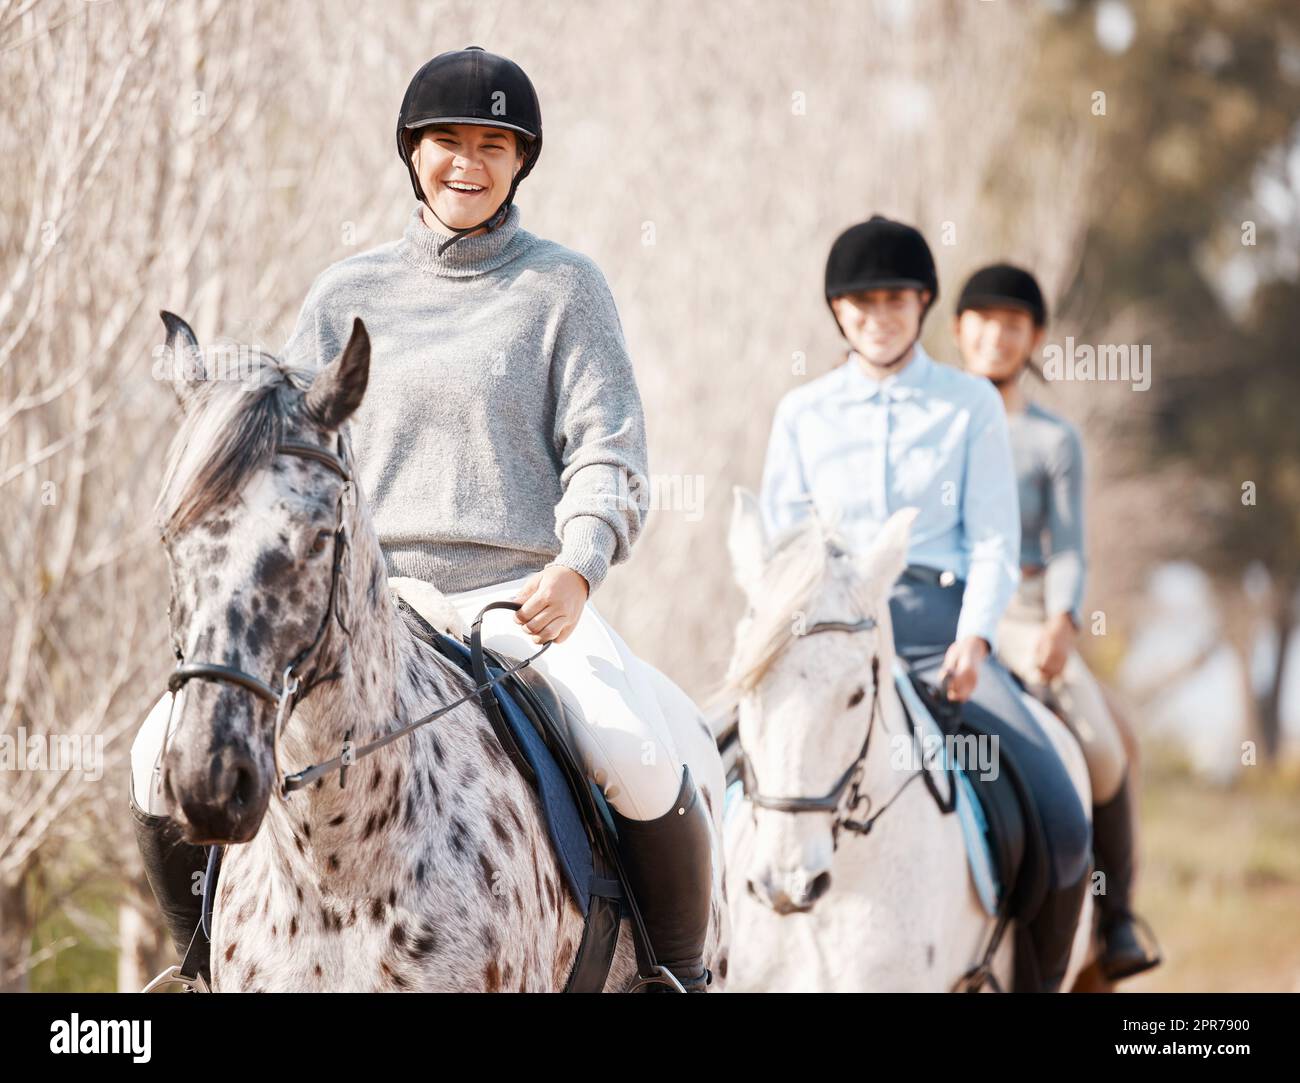 Un buen caballo es difícil de reemplazar. Tiro de tres mujeres jóvenes atractivas a caballo en una granja. Foto de stock